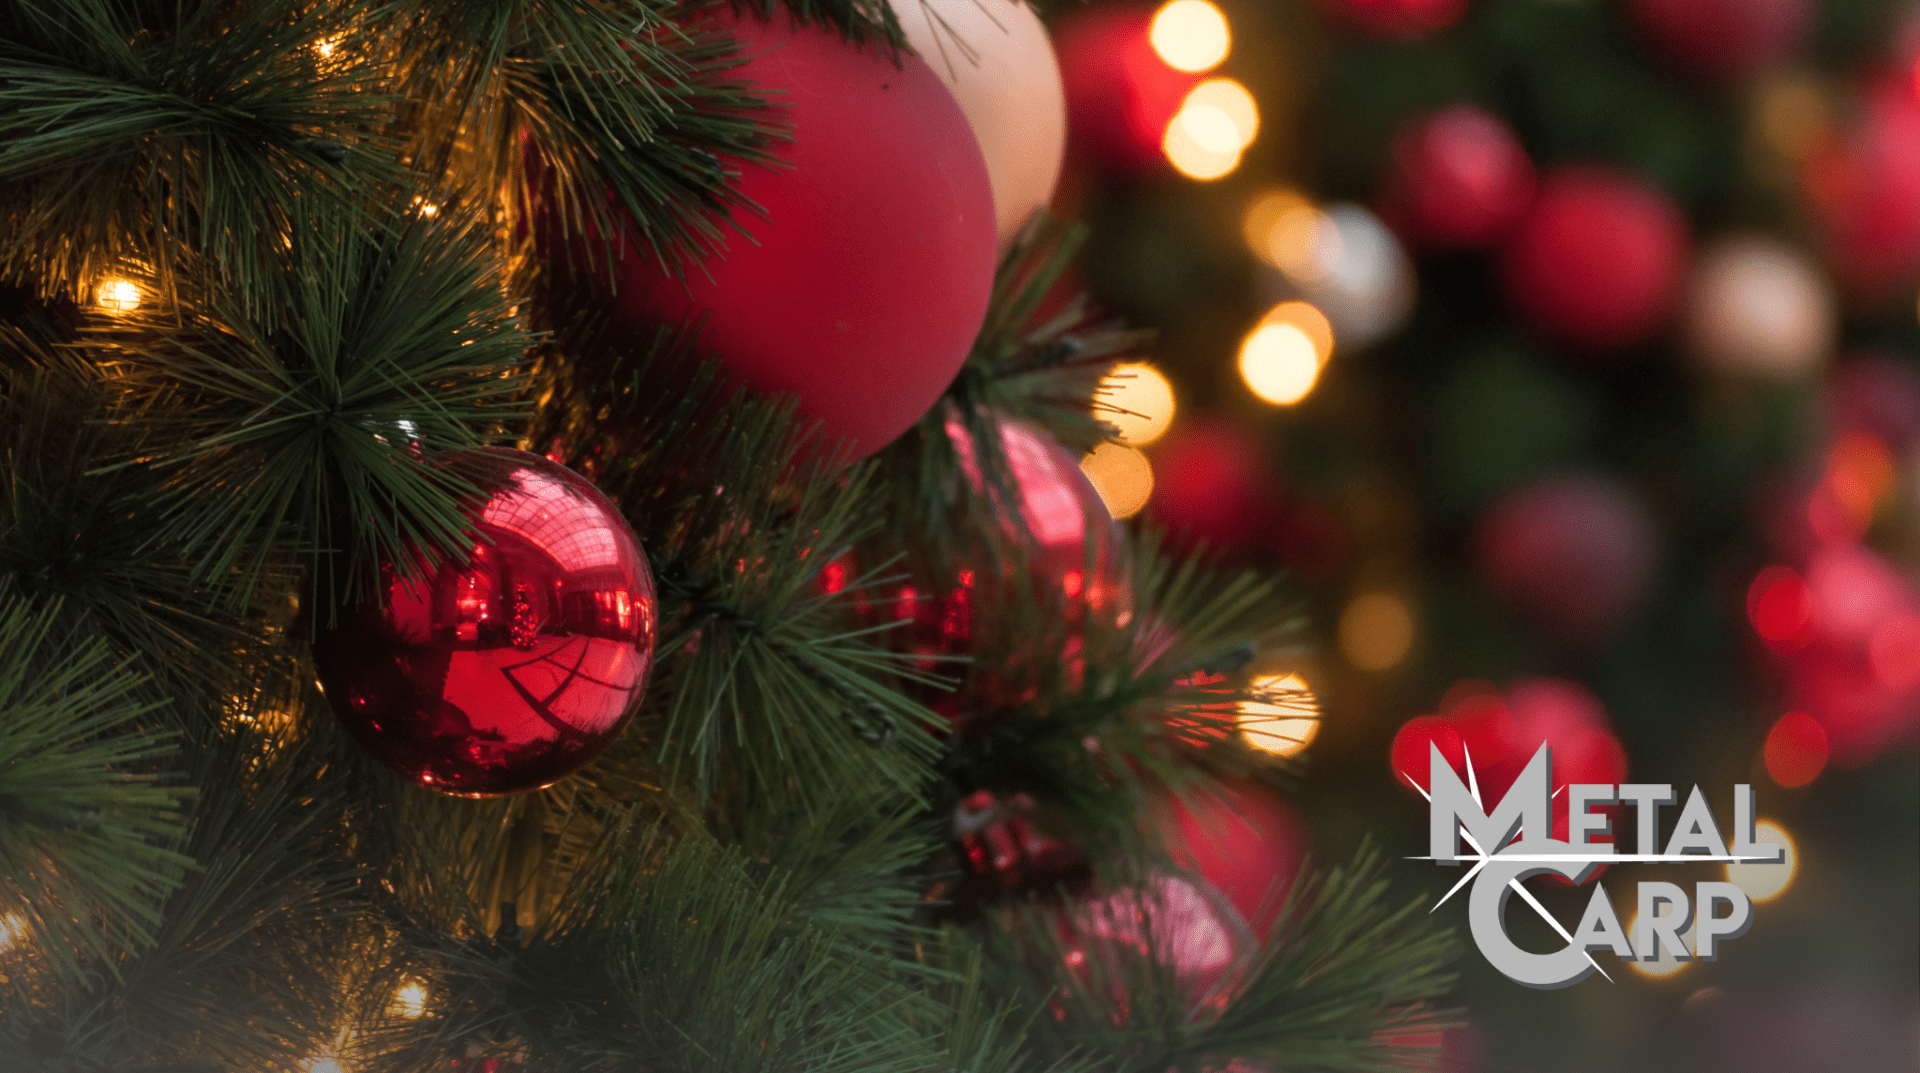 L'8 dicembre è alle porte e vogliamo augurarvi di trascorrere questa festa con gioia e serenità, insieme ai vostri cari.